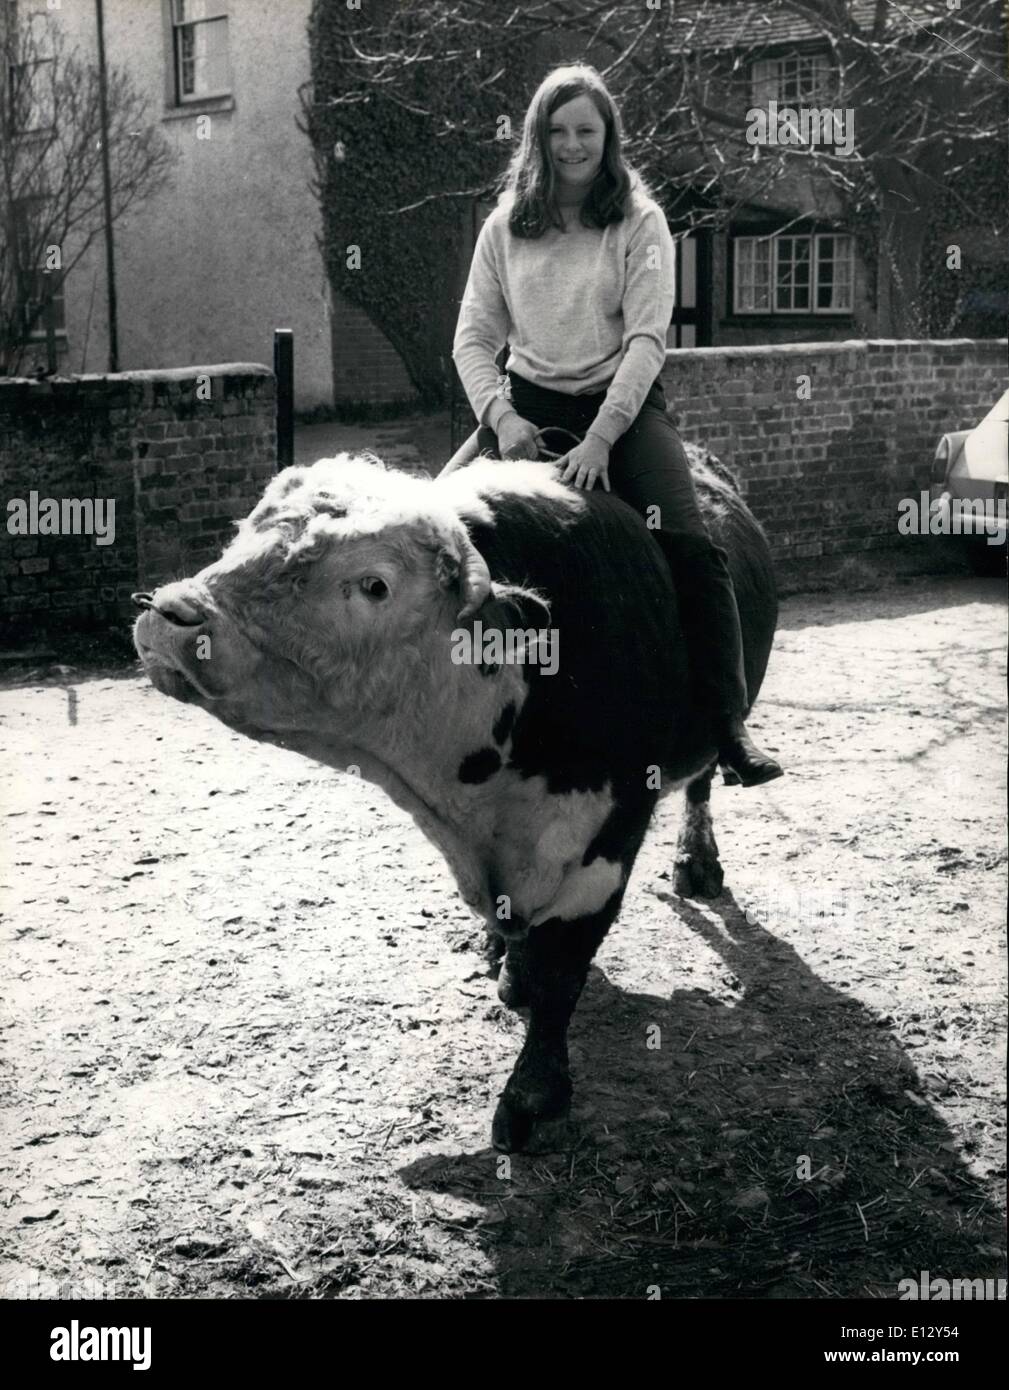 25. Februar 2012 - Down On The Farm - Ellen Rides Crickley The Bull: Als die 18-jährige Ellen Bakeer  der Farm ihres Vaters in Thame, Oxfordshire, eine Frau machen will, benutzt sie kein Auto oder gar kein Pferd - für Ellen springt sie einfach in den Rücken von Crickley, dem Stier: Ellen, die gerade den lokalen 'miss Dairymaid'-Titel gewonnen hat, fährt seit etwas mehr als 18 Monaten Crickley - seit ihr Vater ihn gekauft hat. Denn Ellen war um Crickley besorgt - er war so ruhig - also sprang sie auf seinen Rücken und ritt ihn Stockfoto